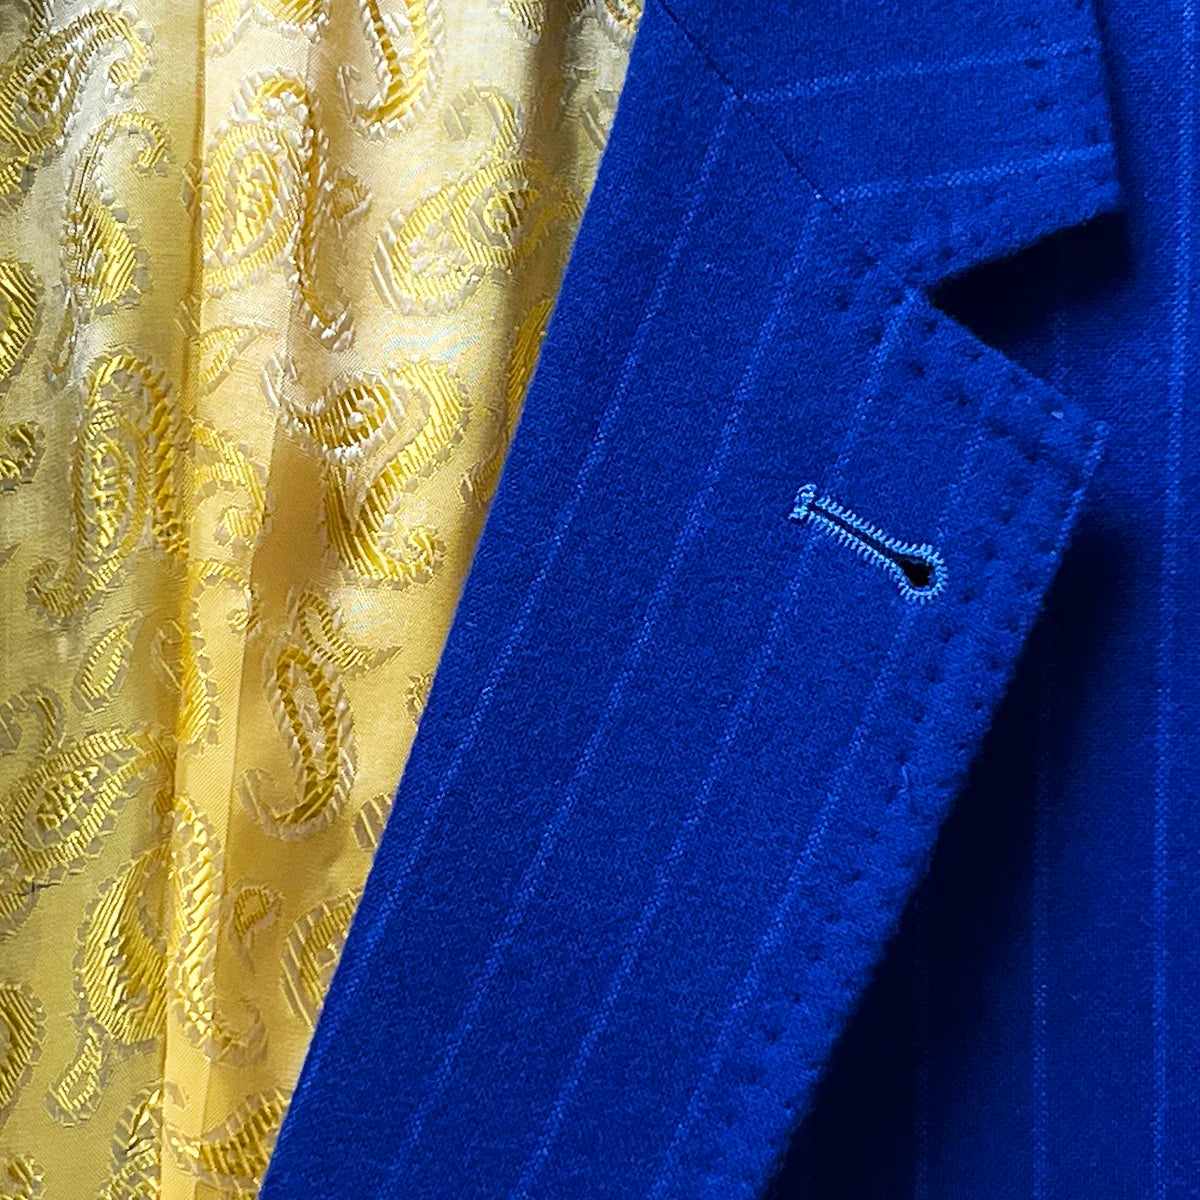 Distinctive lapel buttonhole on a royal blue pinstripe suit.